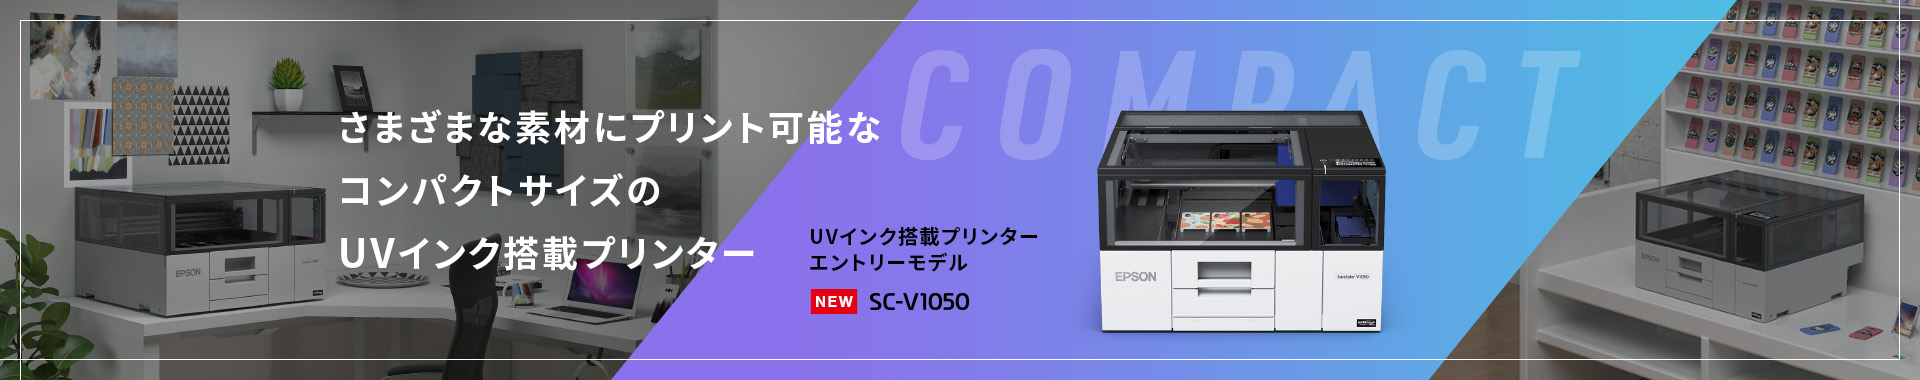 さまざまな素材にプリント可能なコンパクトサイズのUVインク搭載プリンター エントリーモデル SC-V1050 